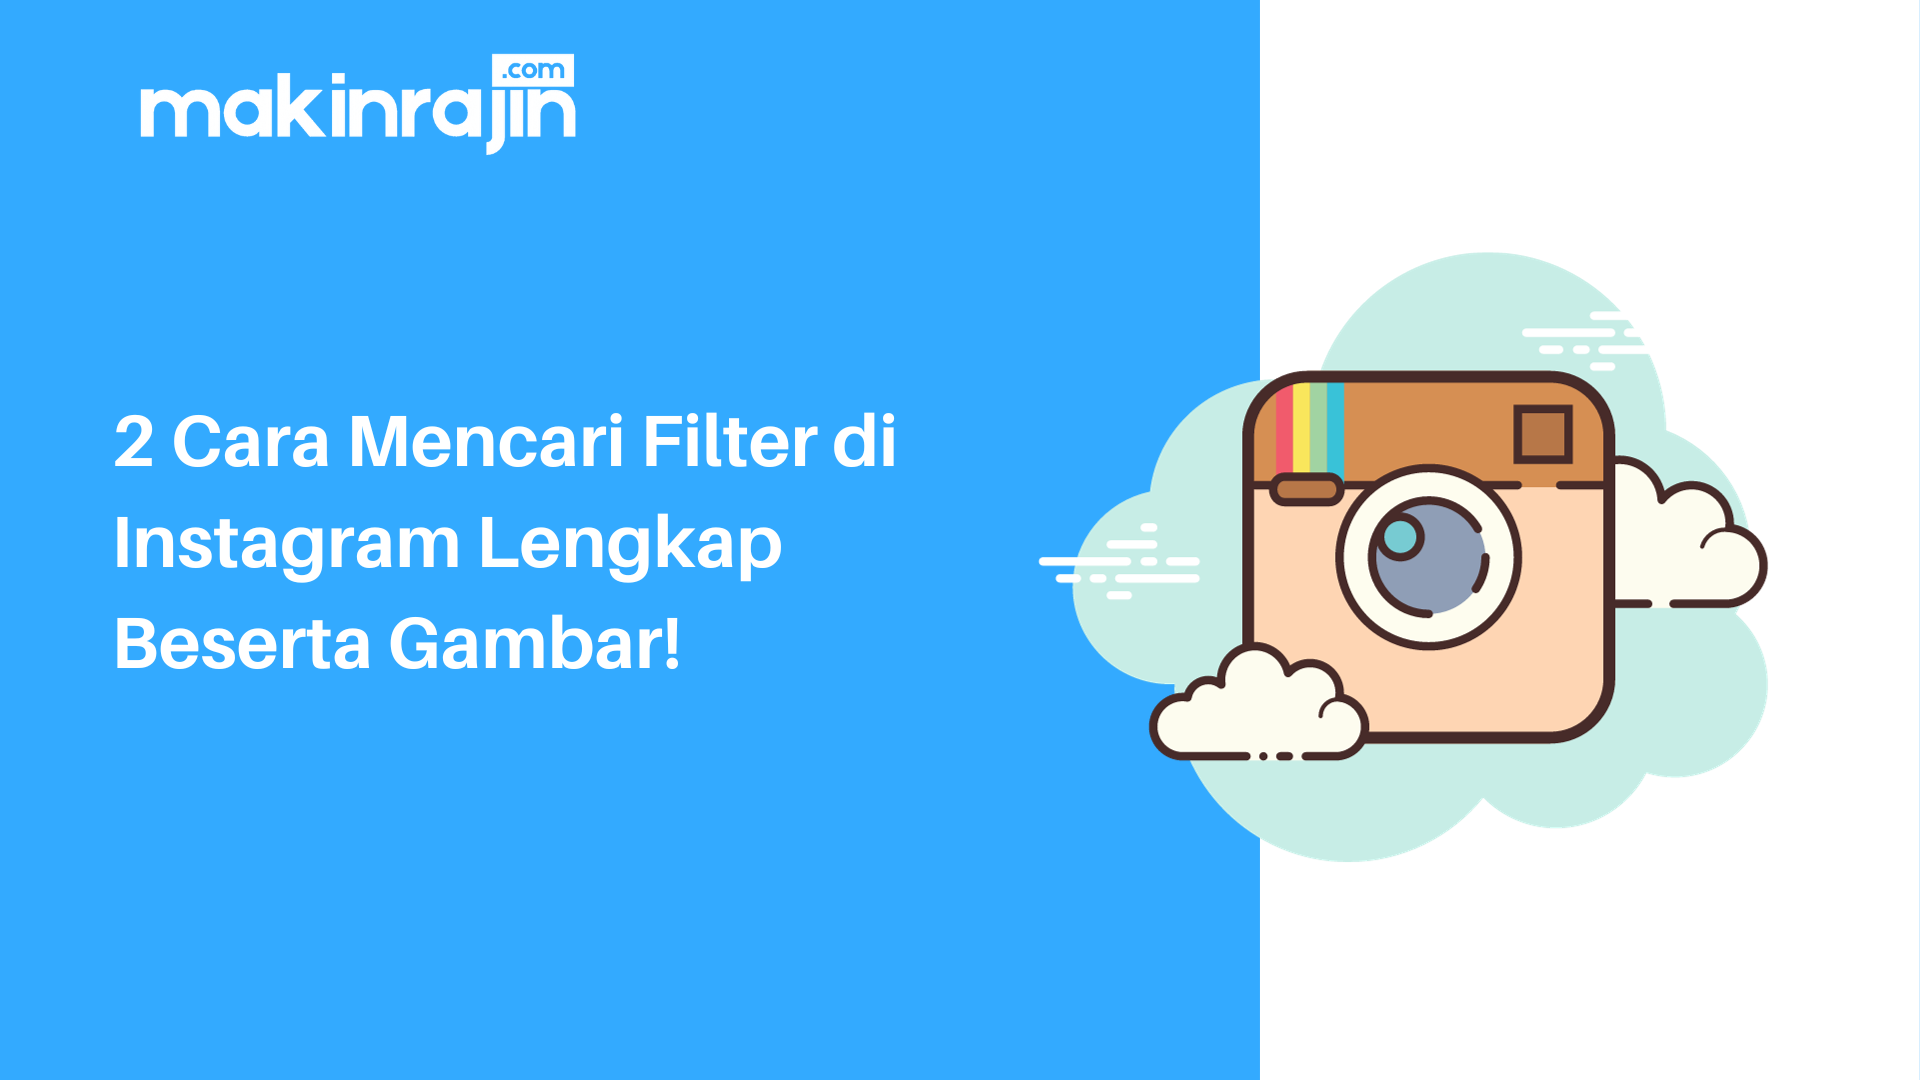 2 Cara Mencari Filter di Instagram Lengkap Beserta Gambar!